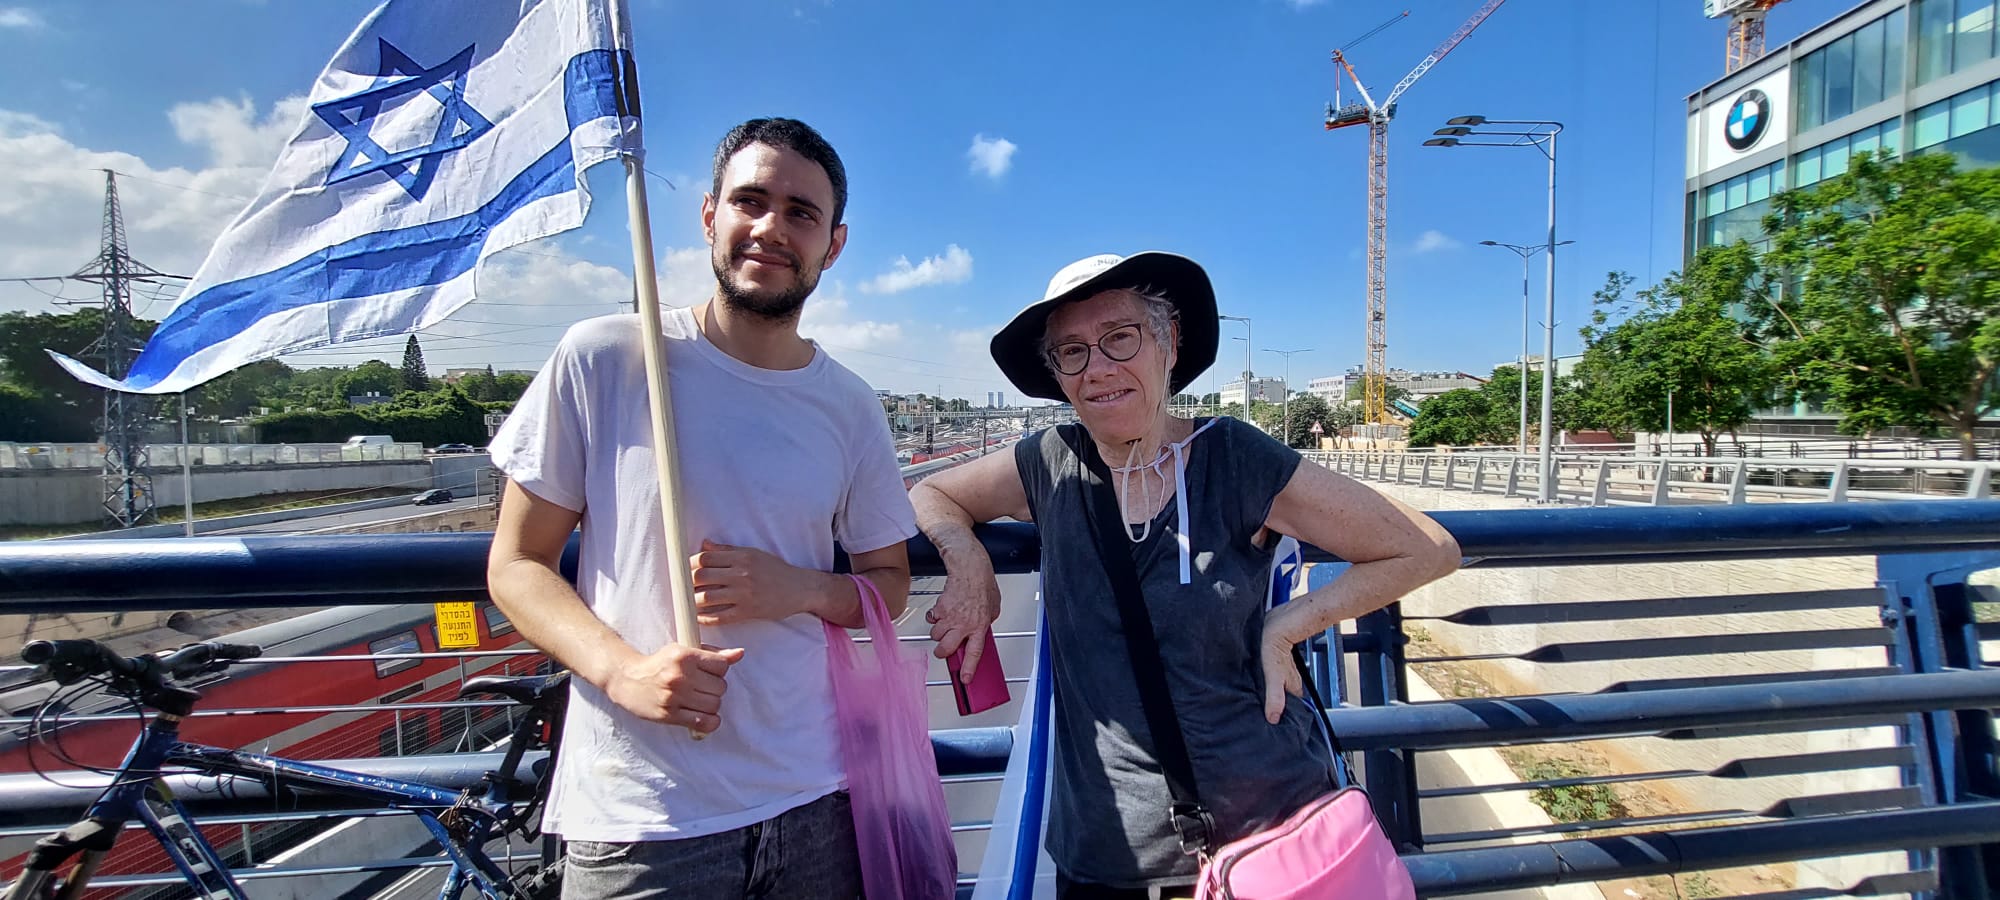 תמר פורי ובנה אלון מפגינים במחלף לה גווארדיה בתל אביב (צילום: הדס יום טוב)